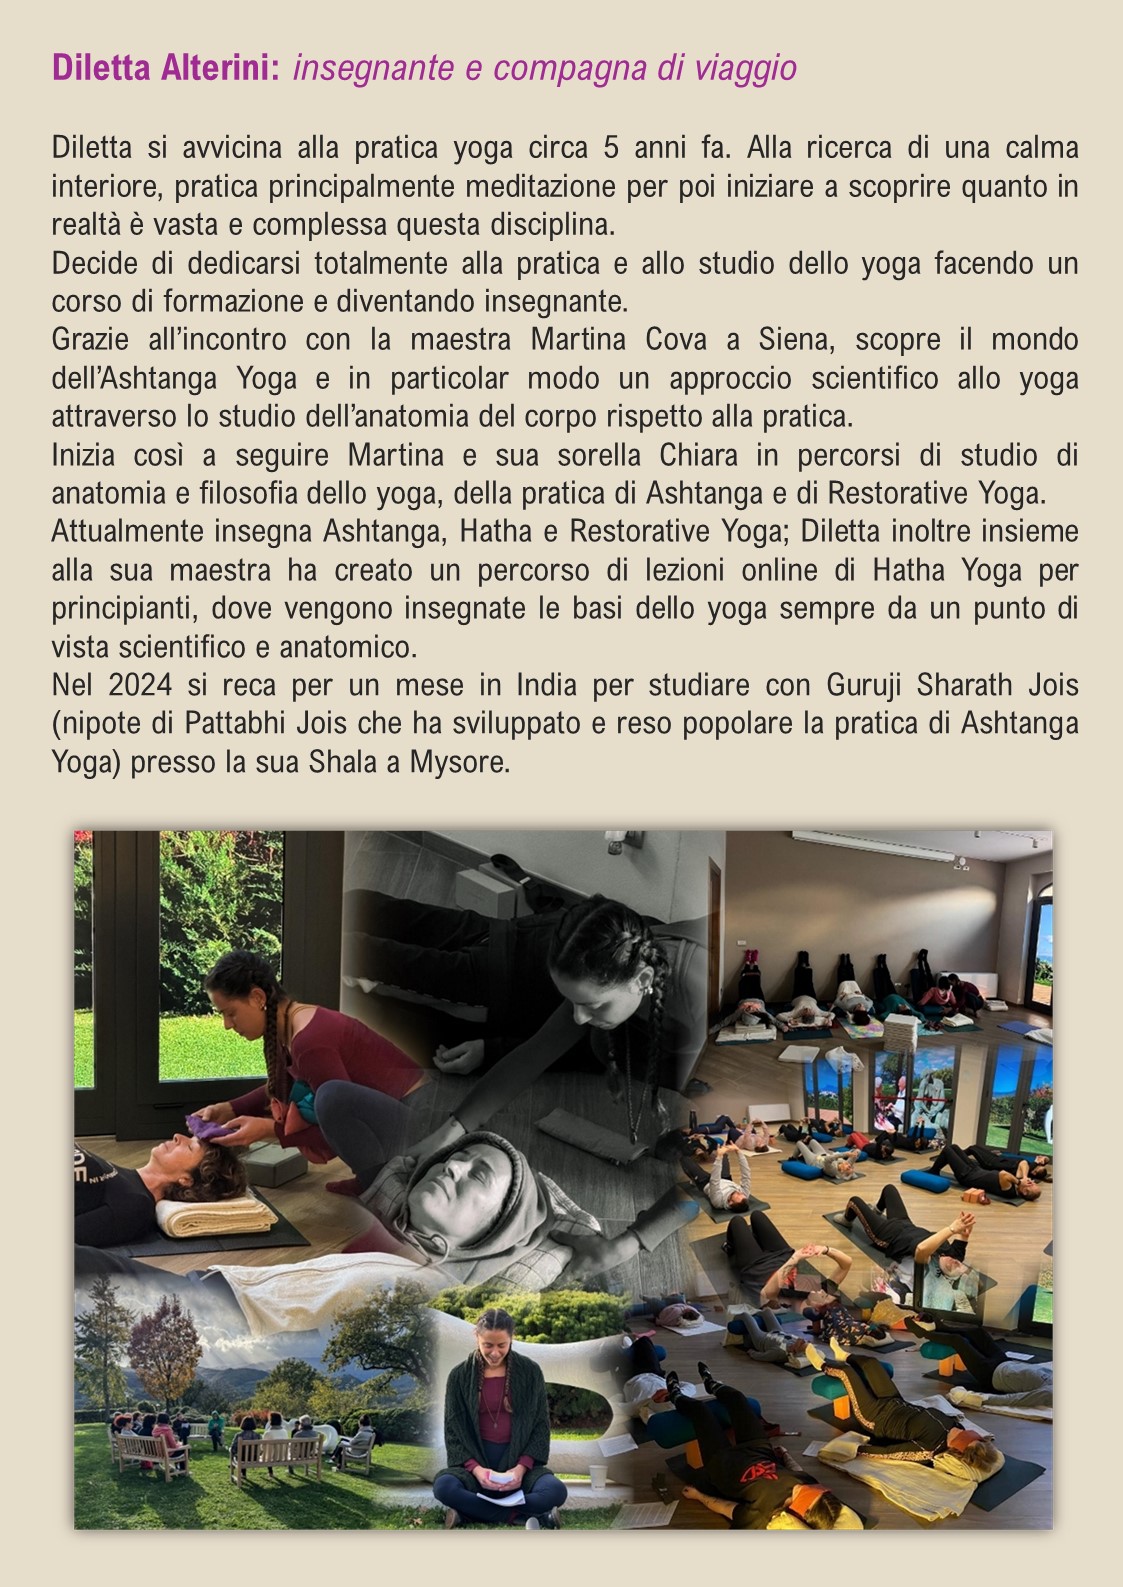 Diletta Yoga 24 C2